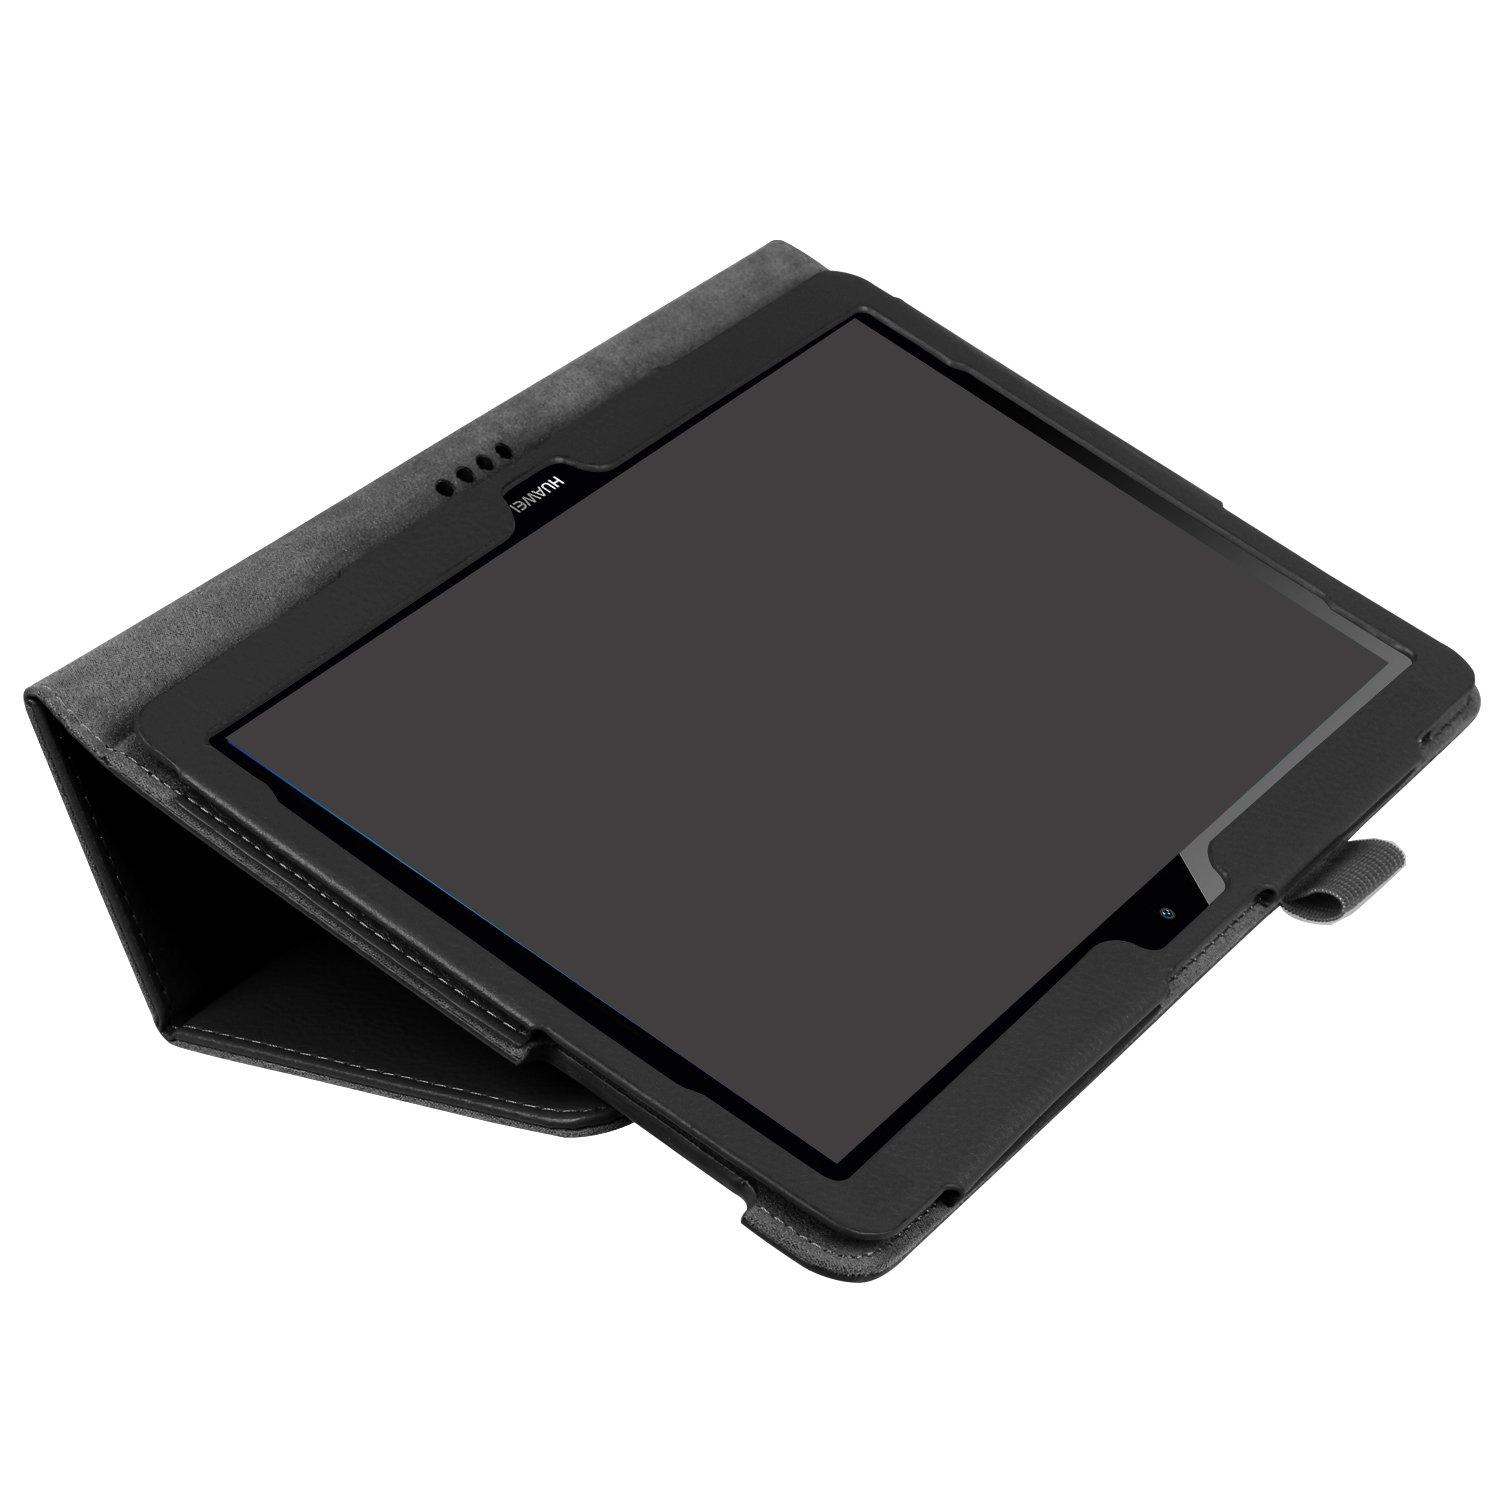 Изображение товара: Магнитный чехол для Huawei MediaPad T3 10 Smart, чехол из искусственной кожи с функцией автоматического сна и пробуждения, AGS-W09, AGS-L09, AGS-L03